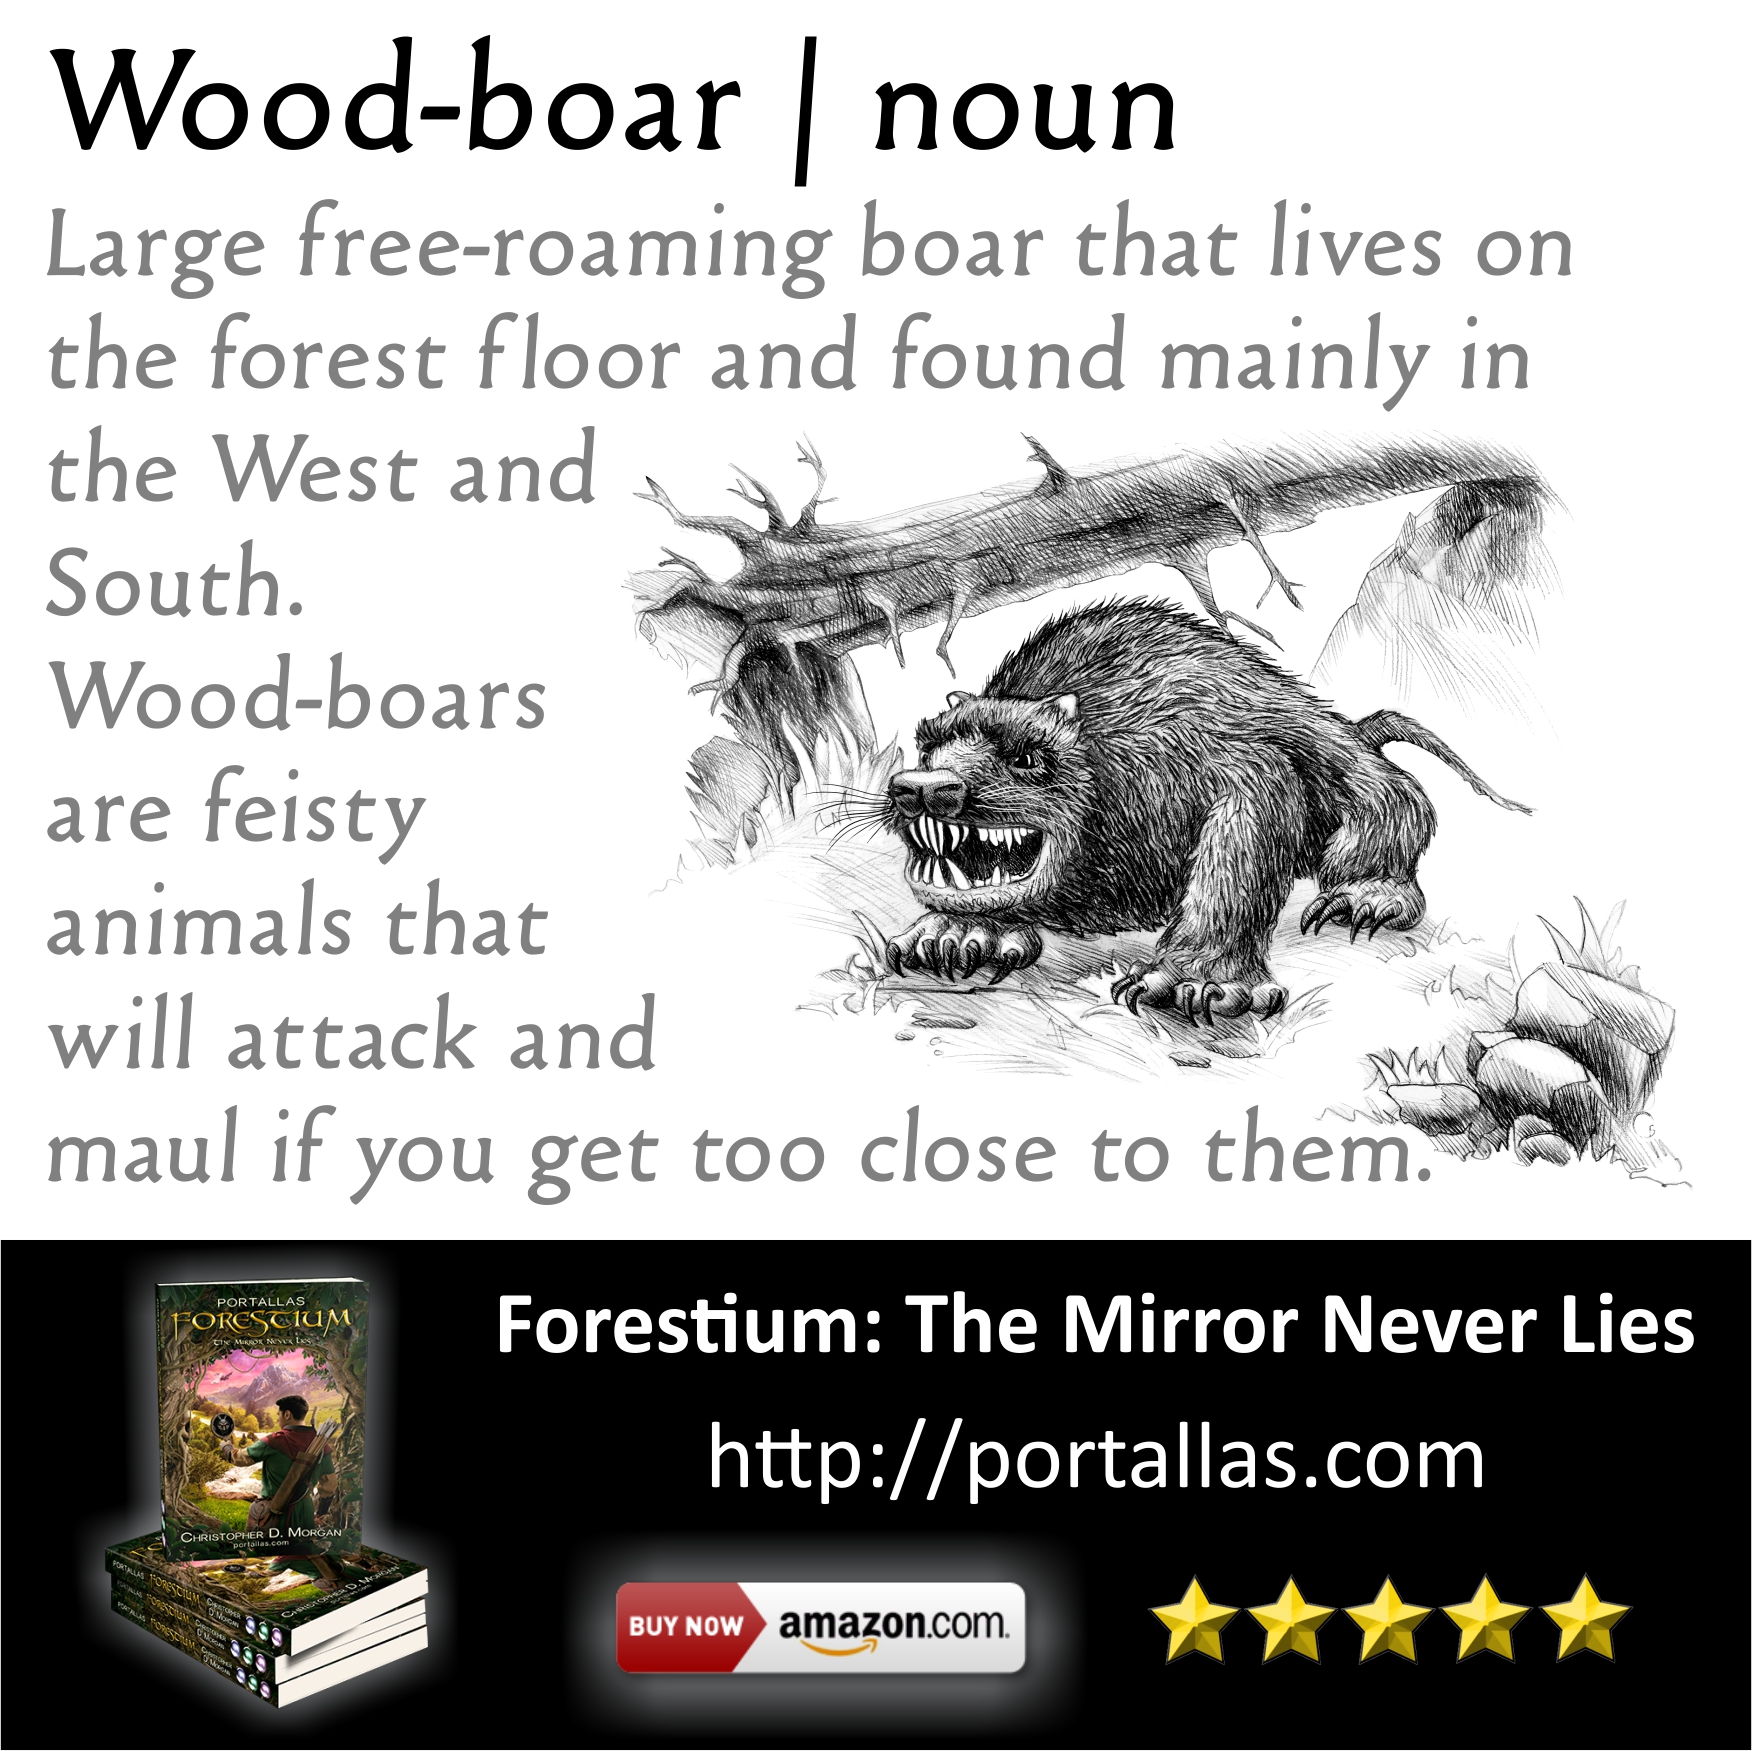 Wood-boar